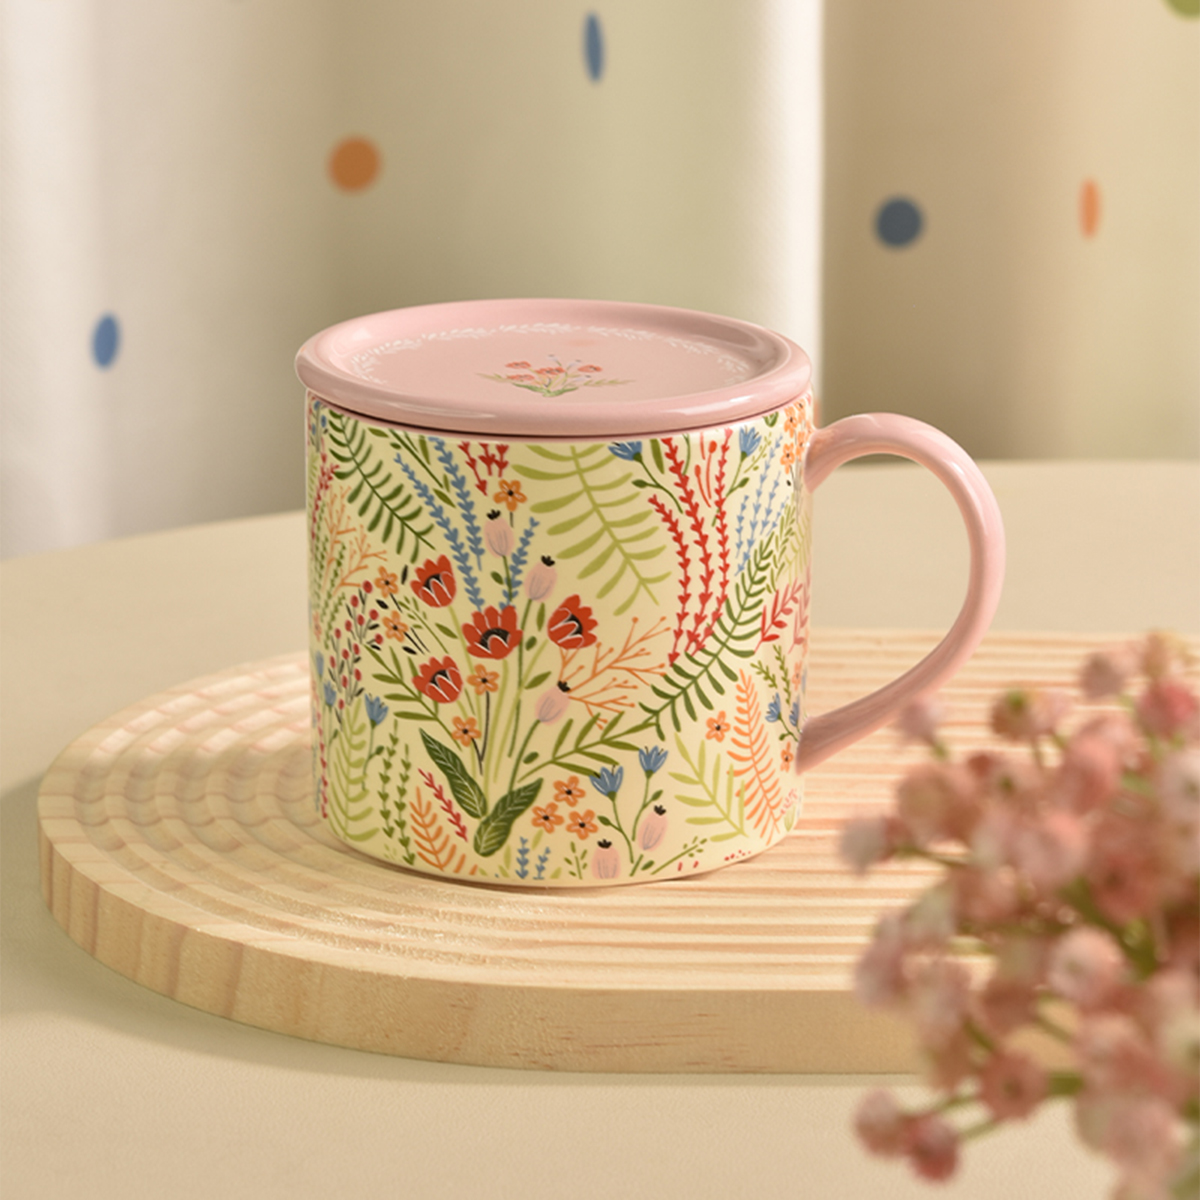 PiaJi 花卉马克杯女生陶瓷杯子带盖喝水杯家用早餐杯咖啡杯